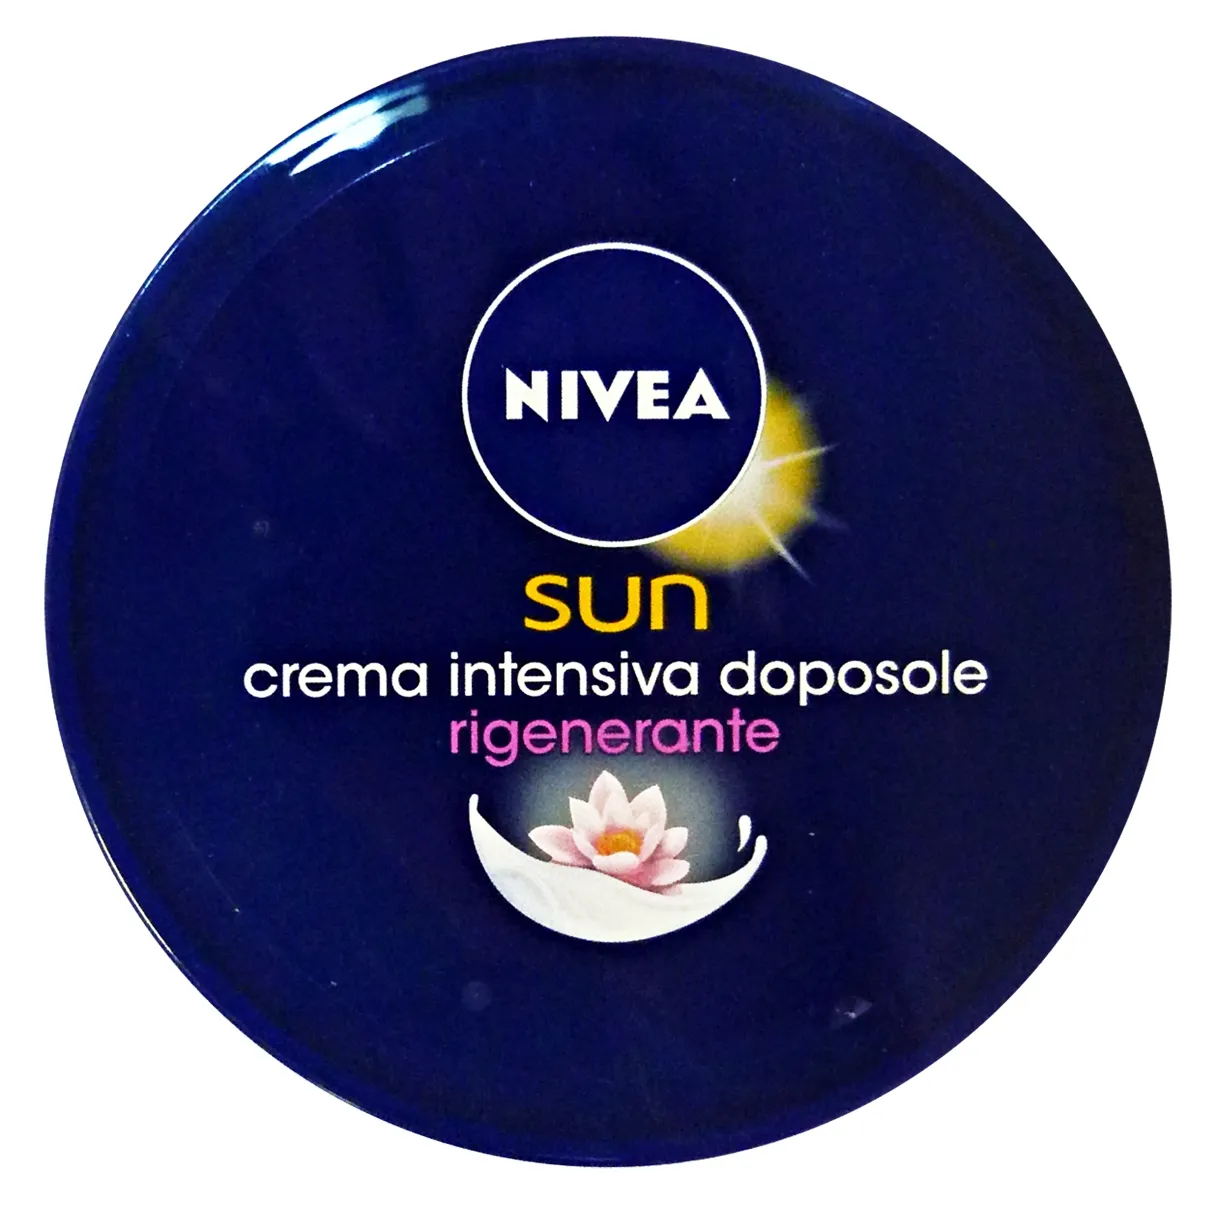 "NIVEA Doposole vaso crema 300 ml. - Prodotti solari"